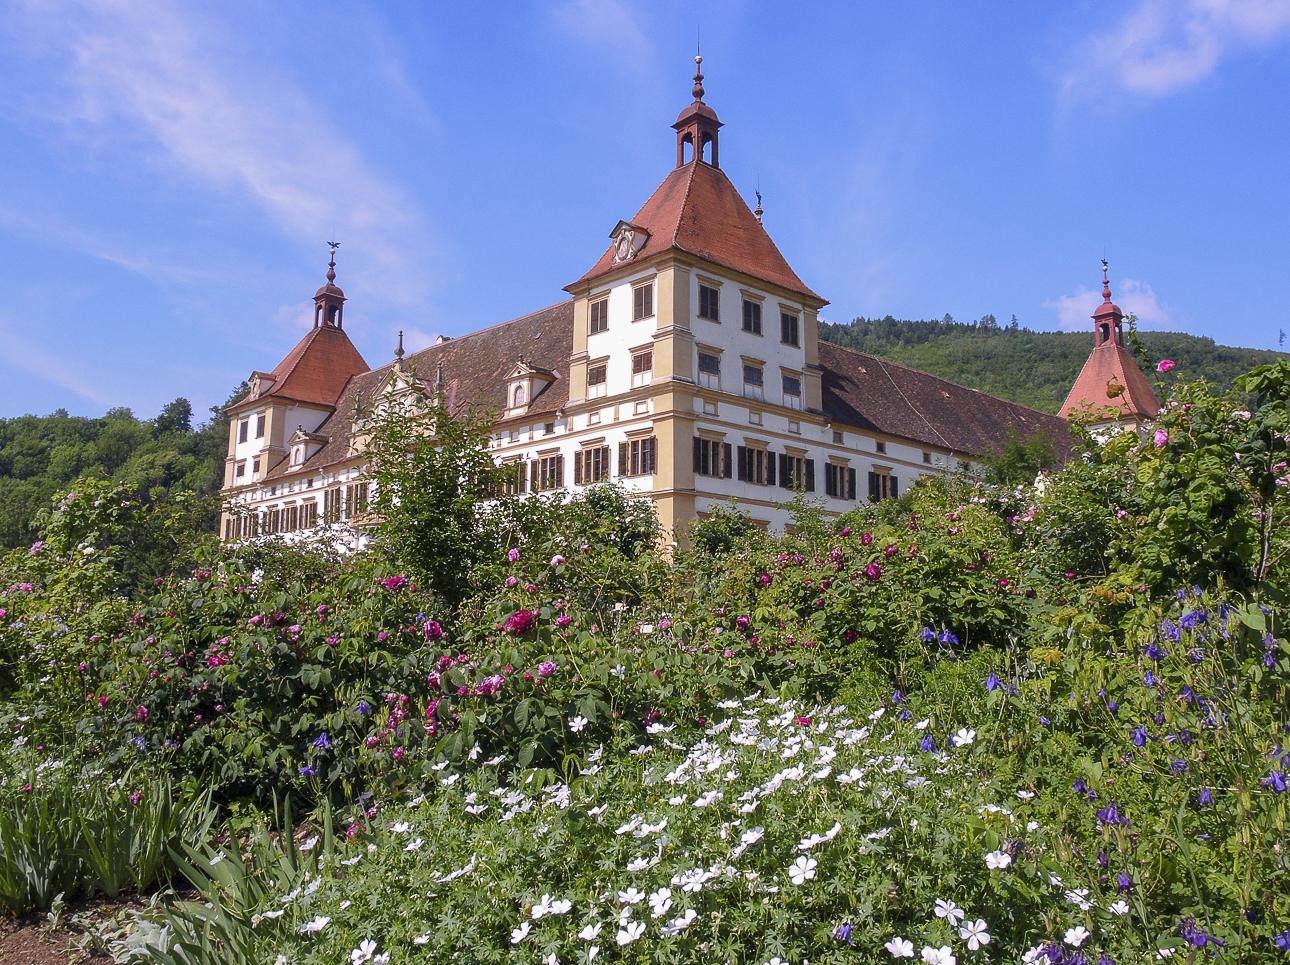 Fotokurse in Graz auf Schloss Eggenberg - Fotografie Tipps für Anfänger